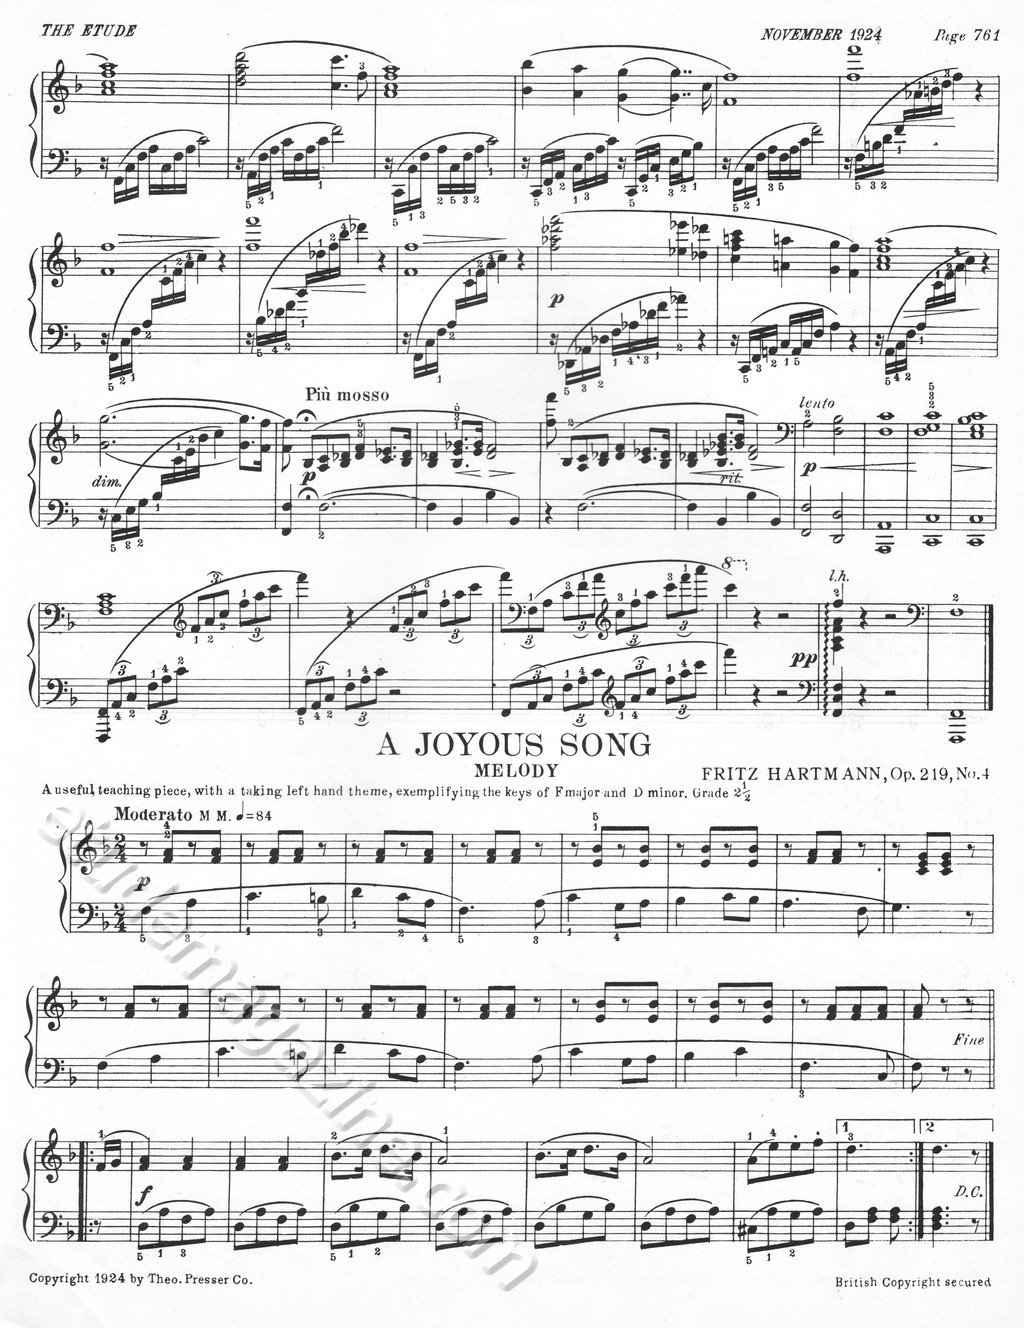 A Joyous Song (Melody). Fritz Hartmann, Op. 219, No. 4